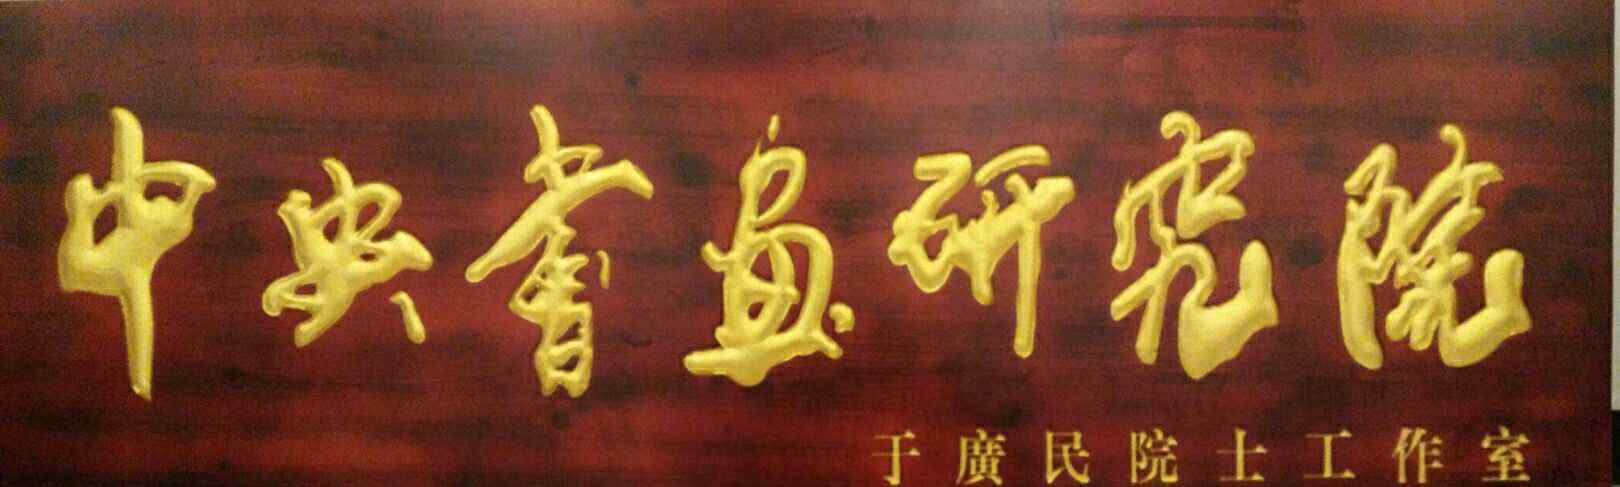 李讷简历 中国非物质文化遗产擦笔画于广民艺术简历